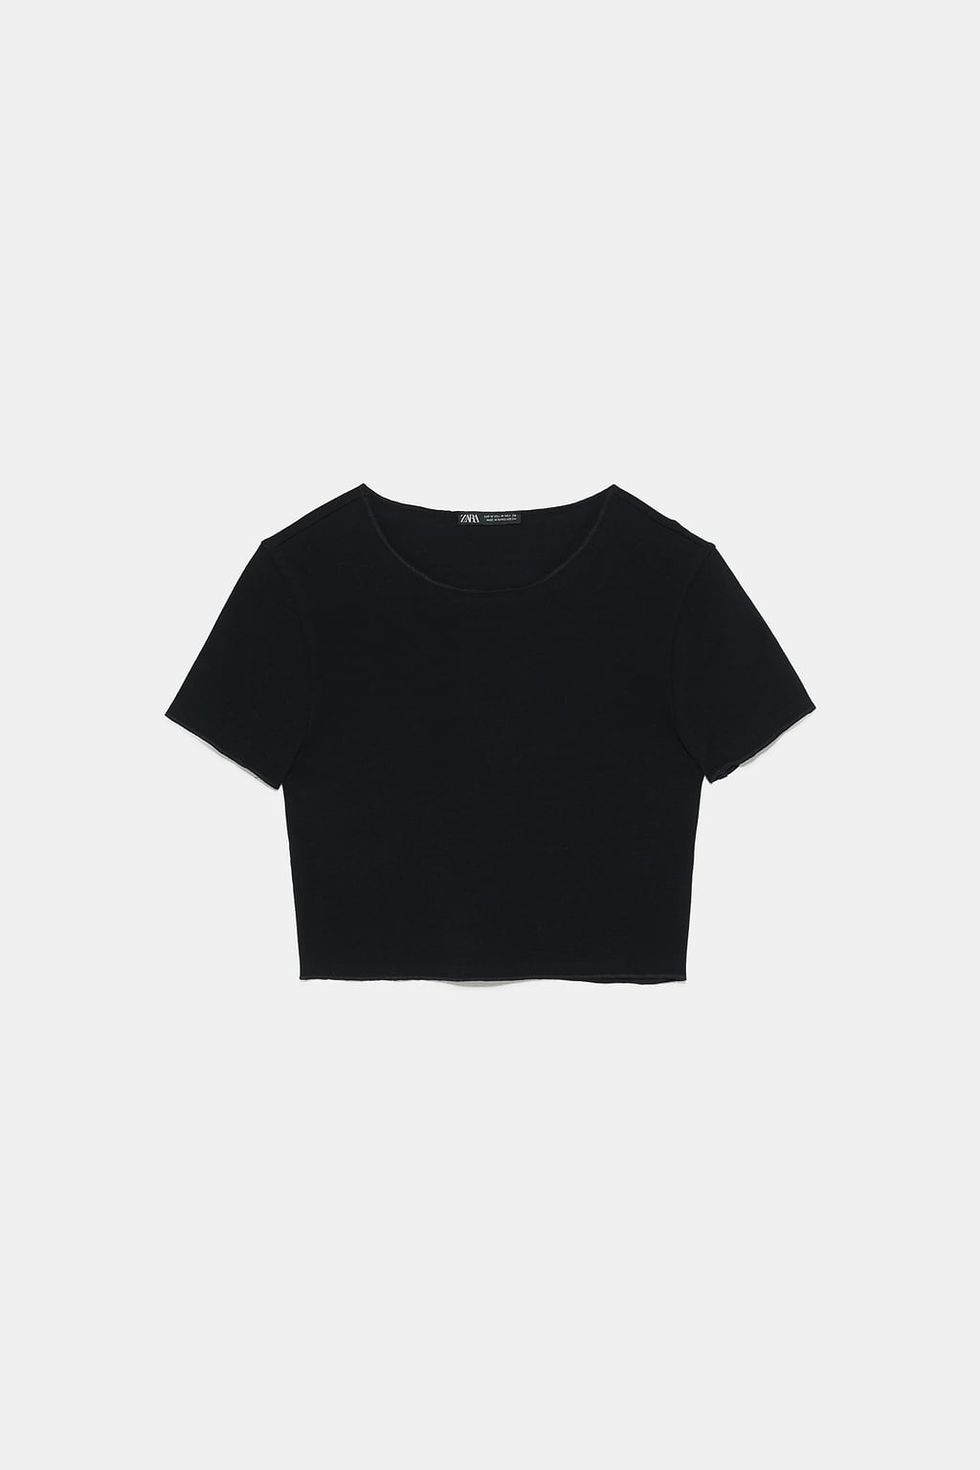 10 formas con mucho estilo de combinar la camiseta negra